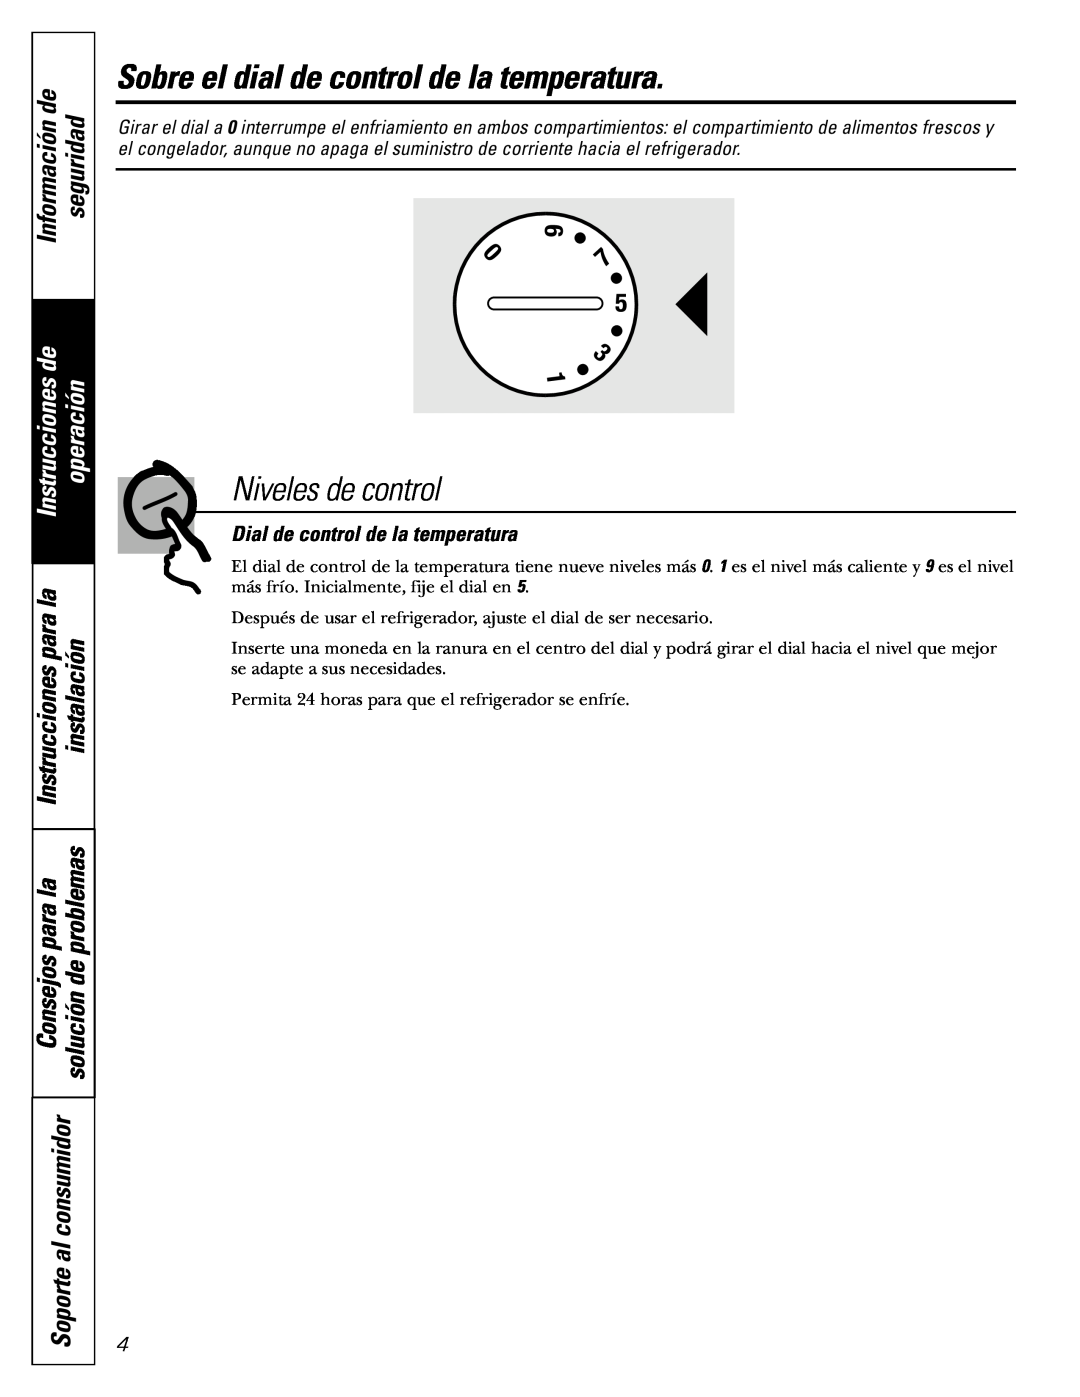 Americana Appliances 15 Sobre el dial de control de la temperatura, Niveles de control, Información de, seguridad, para la 